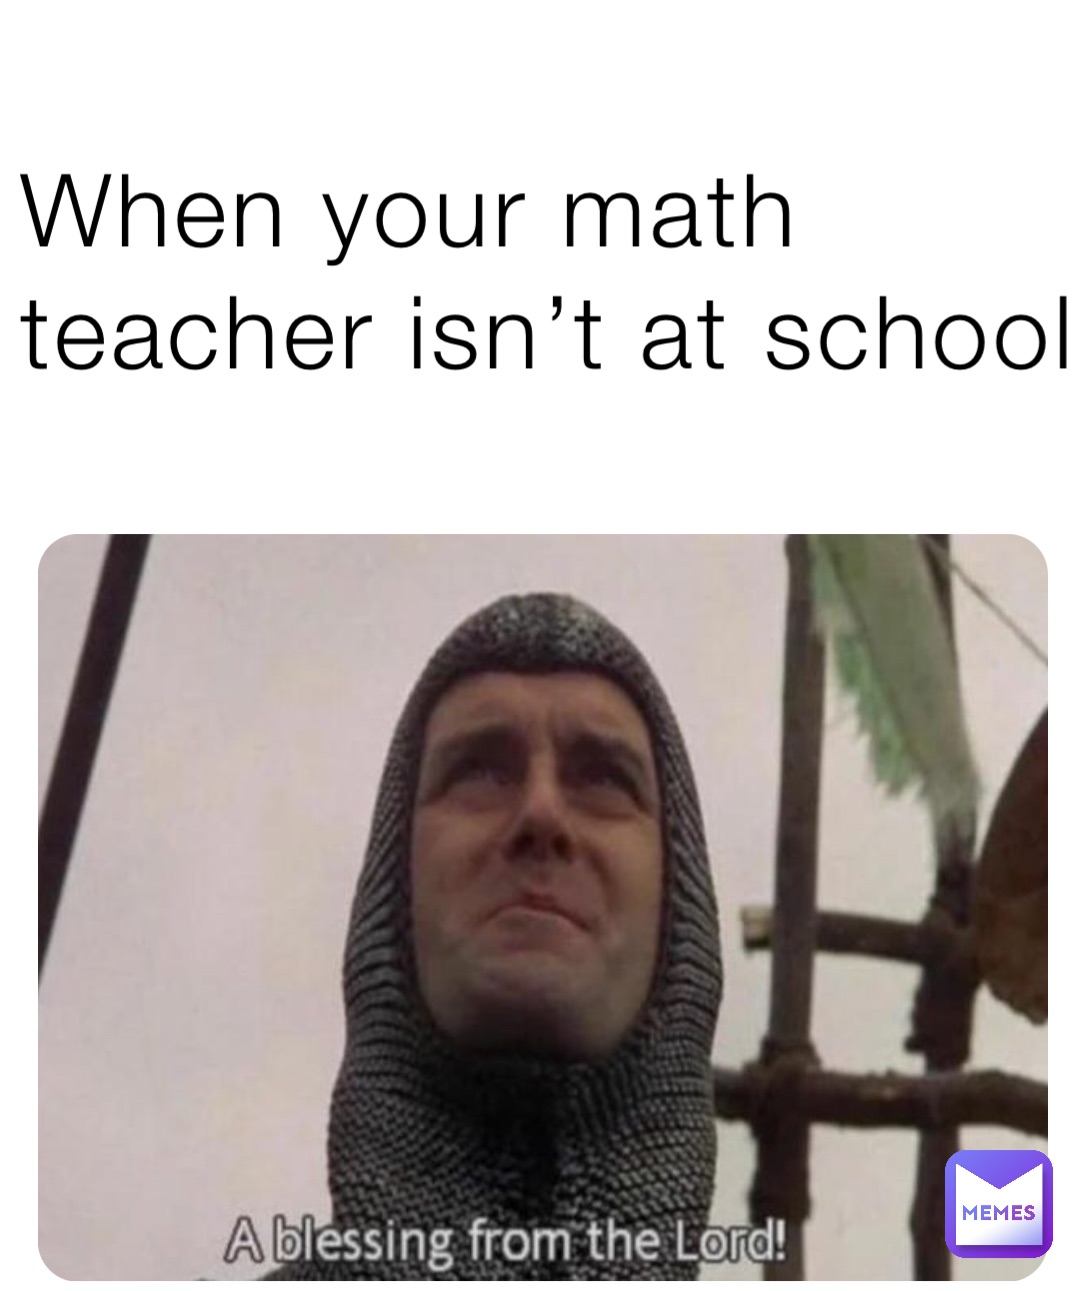 When your math teacher isn’t at school